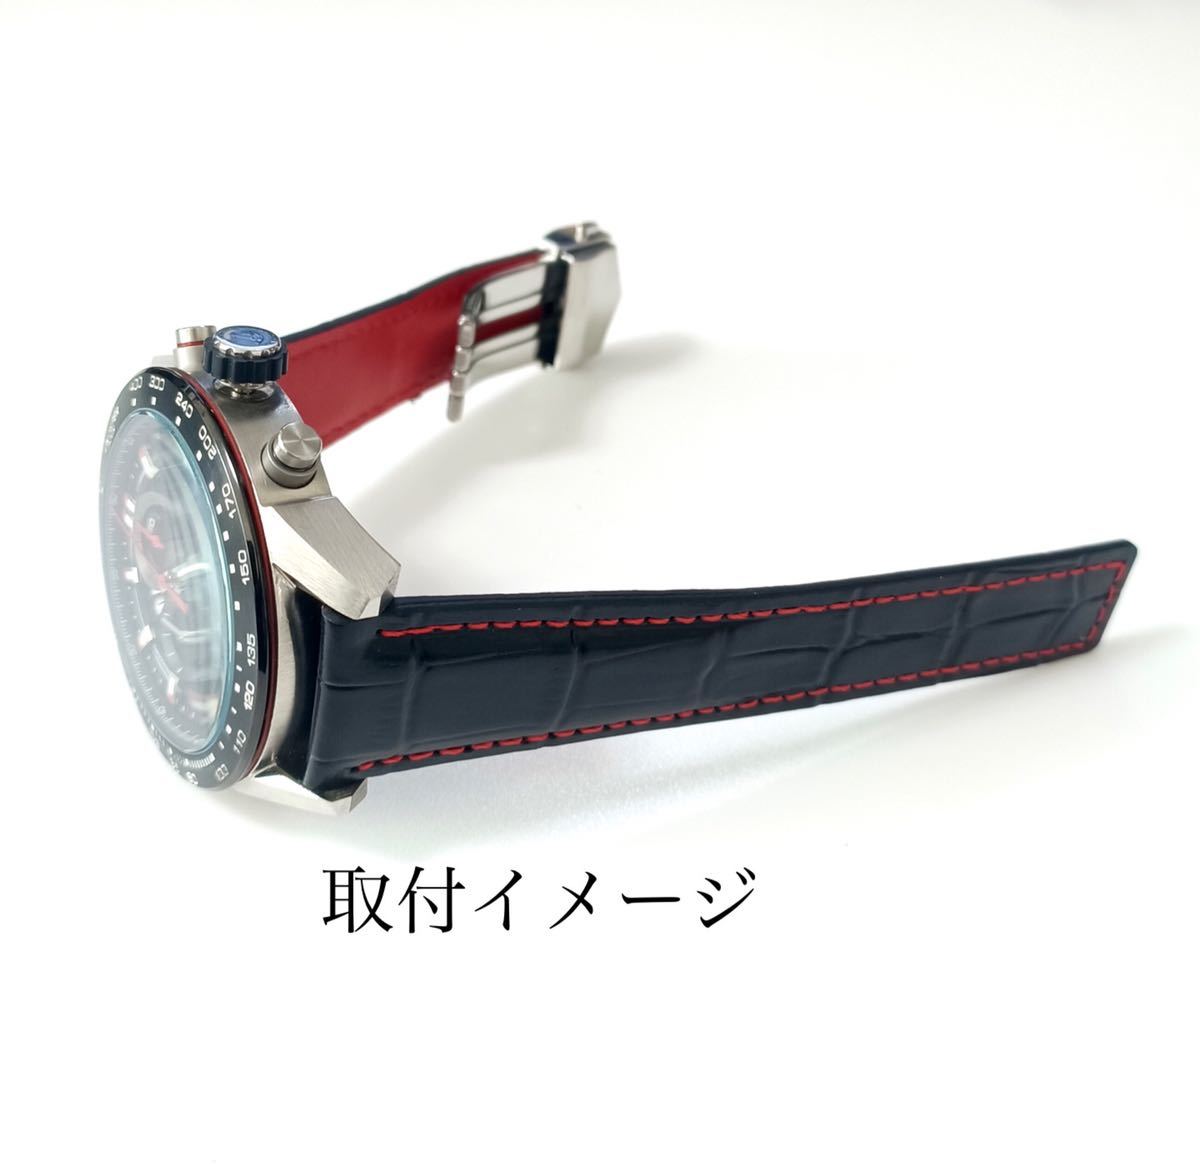 22mm 腕時計 メンズ用 レザー 革ベルト ブラック×レッド 黒×赤 Dバックル 【対応】タグホイヤー TAG HEUER